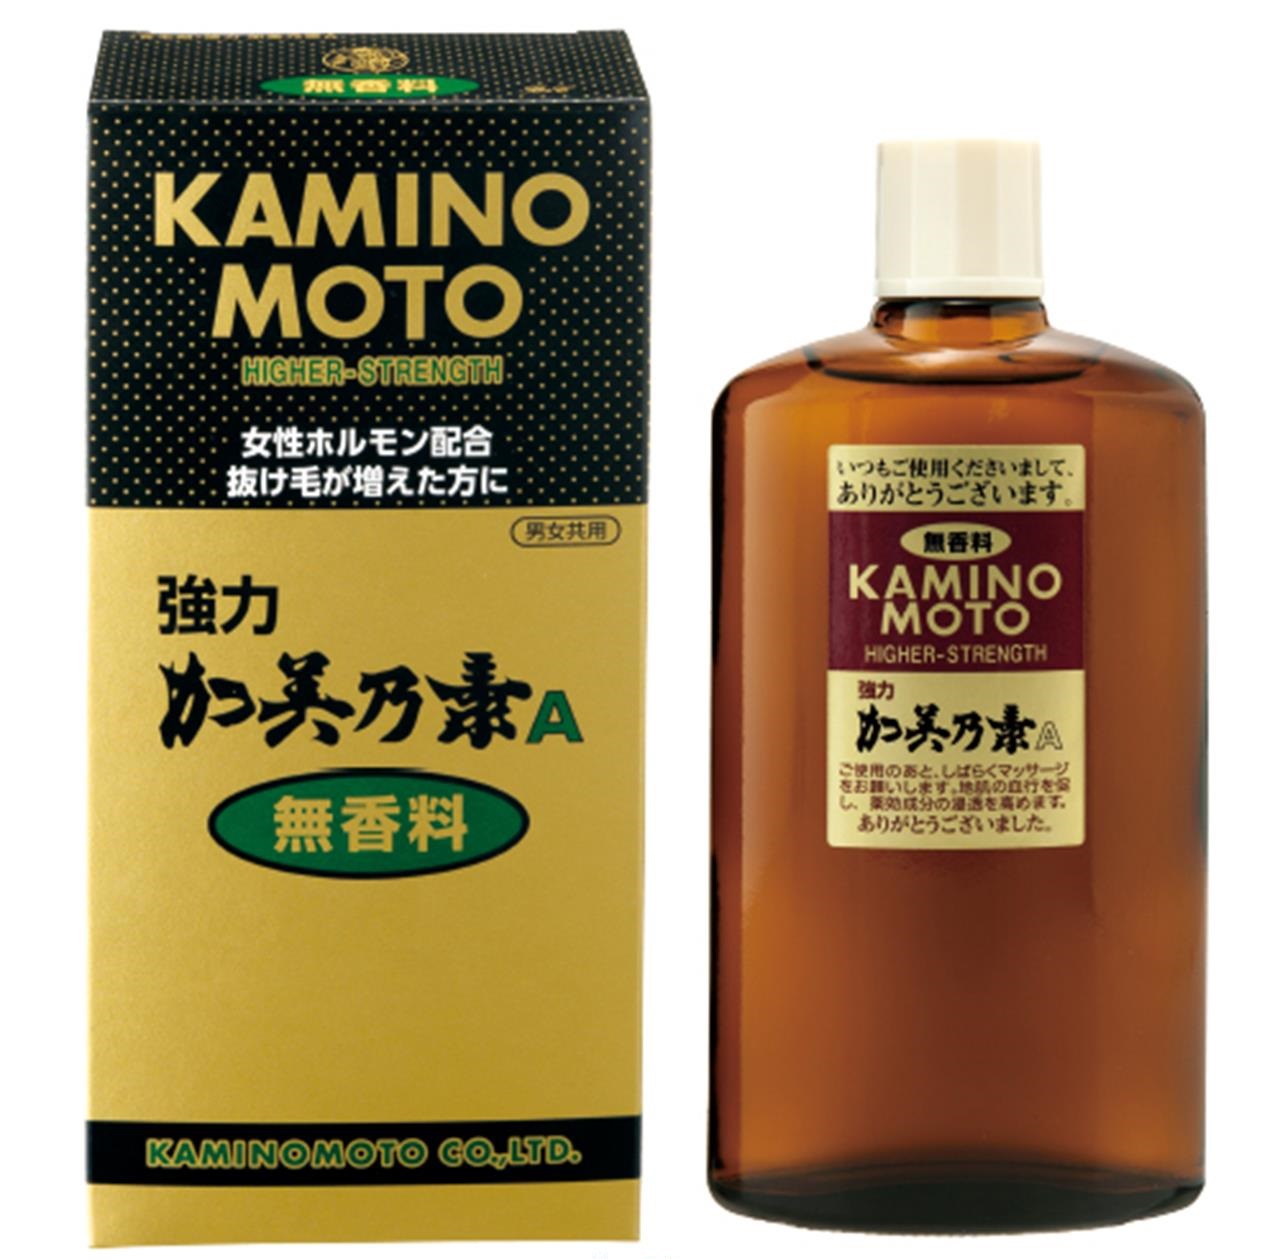 Kaminomoto-Higher-Strenght